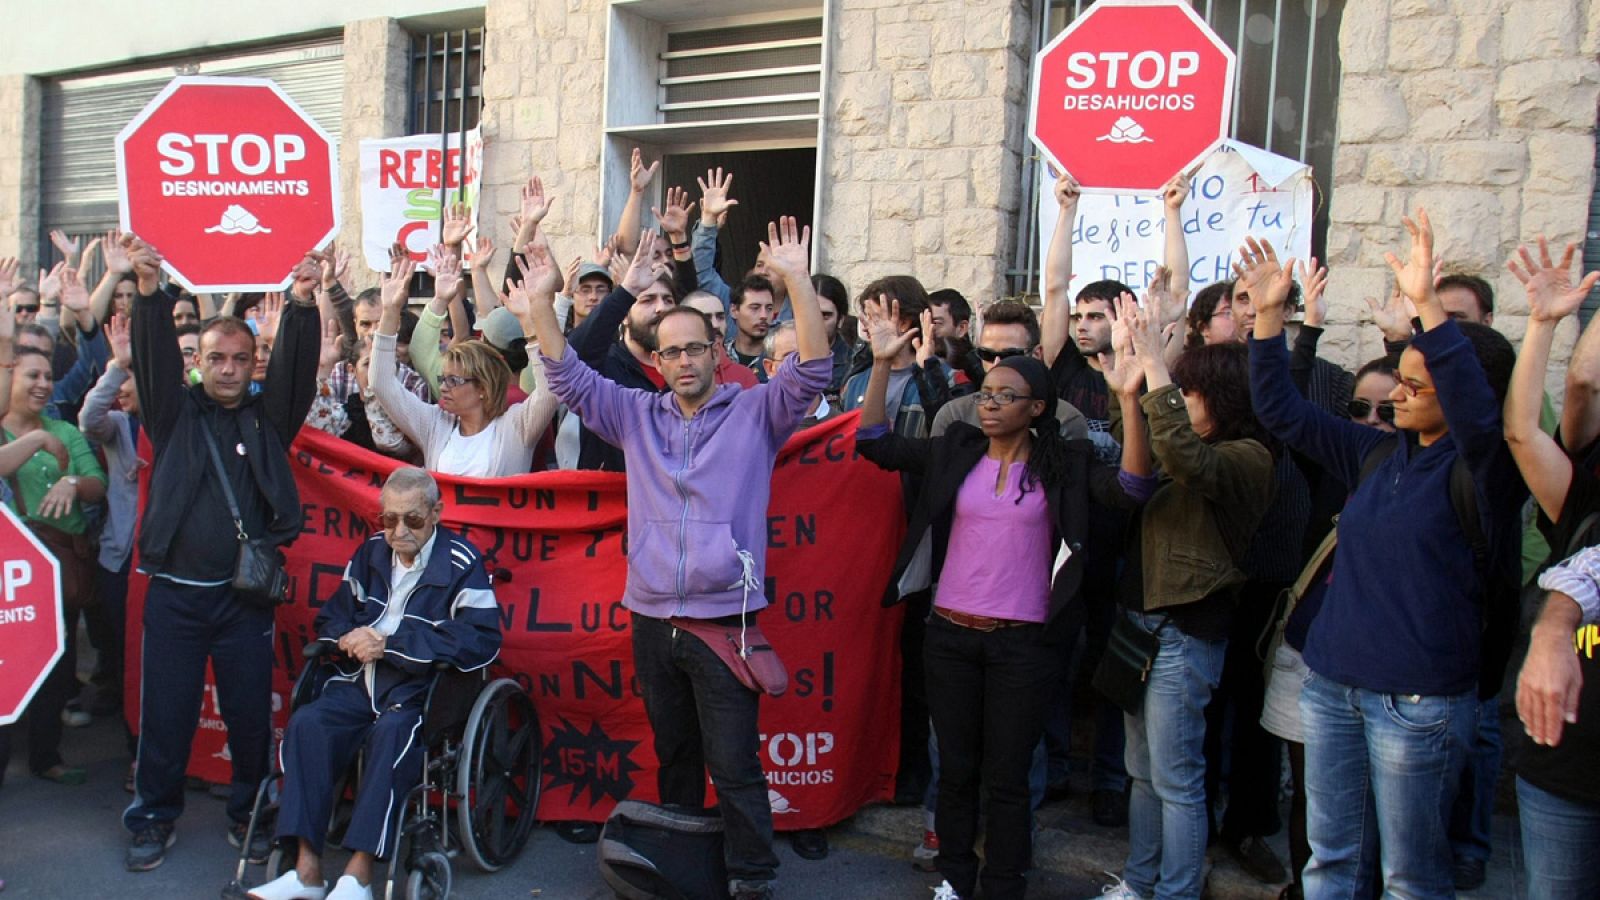 Un grupo de personas protestan contra un desahucio en una imagen de archivo